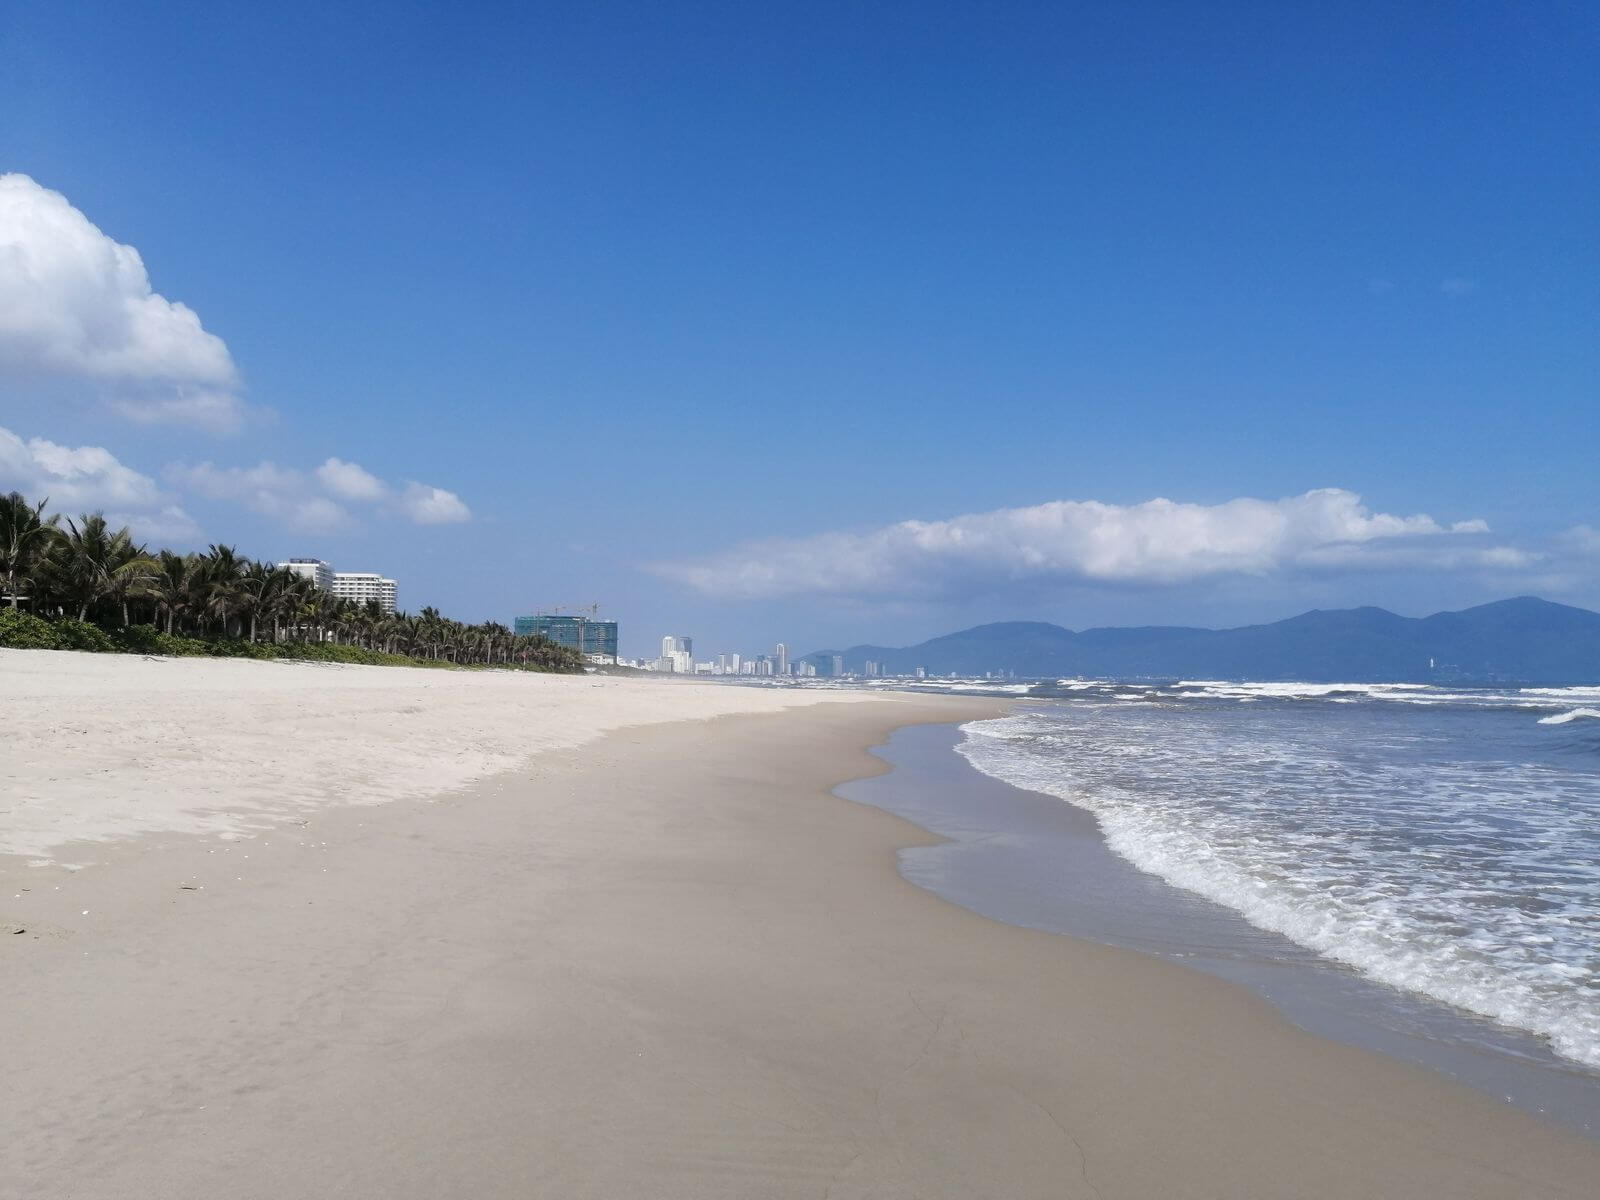 Обзор пляжей шри-ланки - куда ехать отдыхать, отзывы